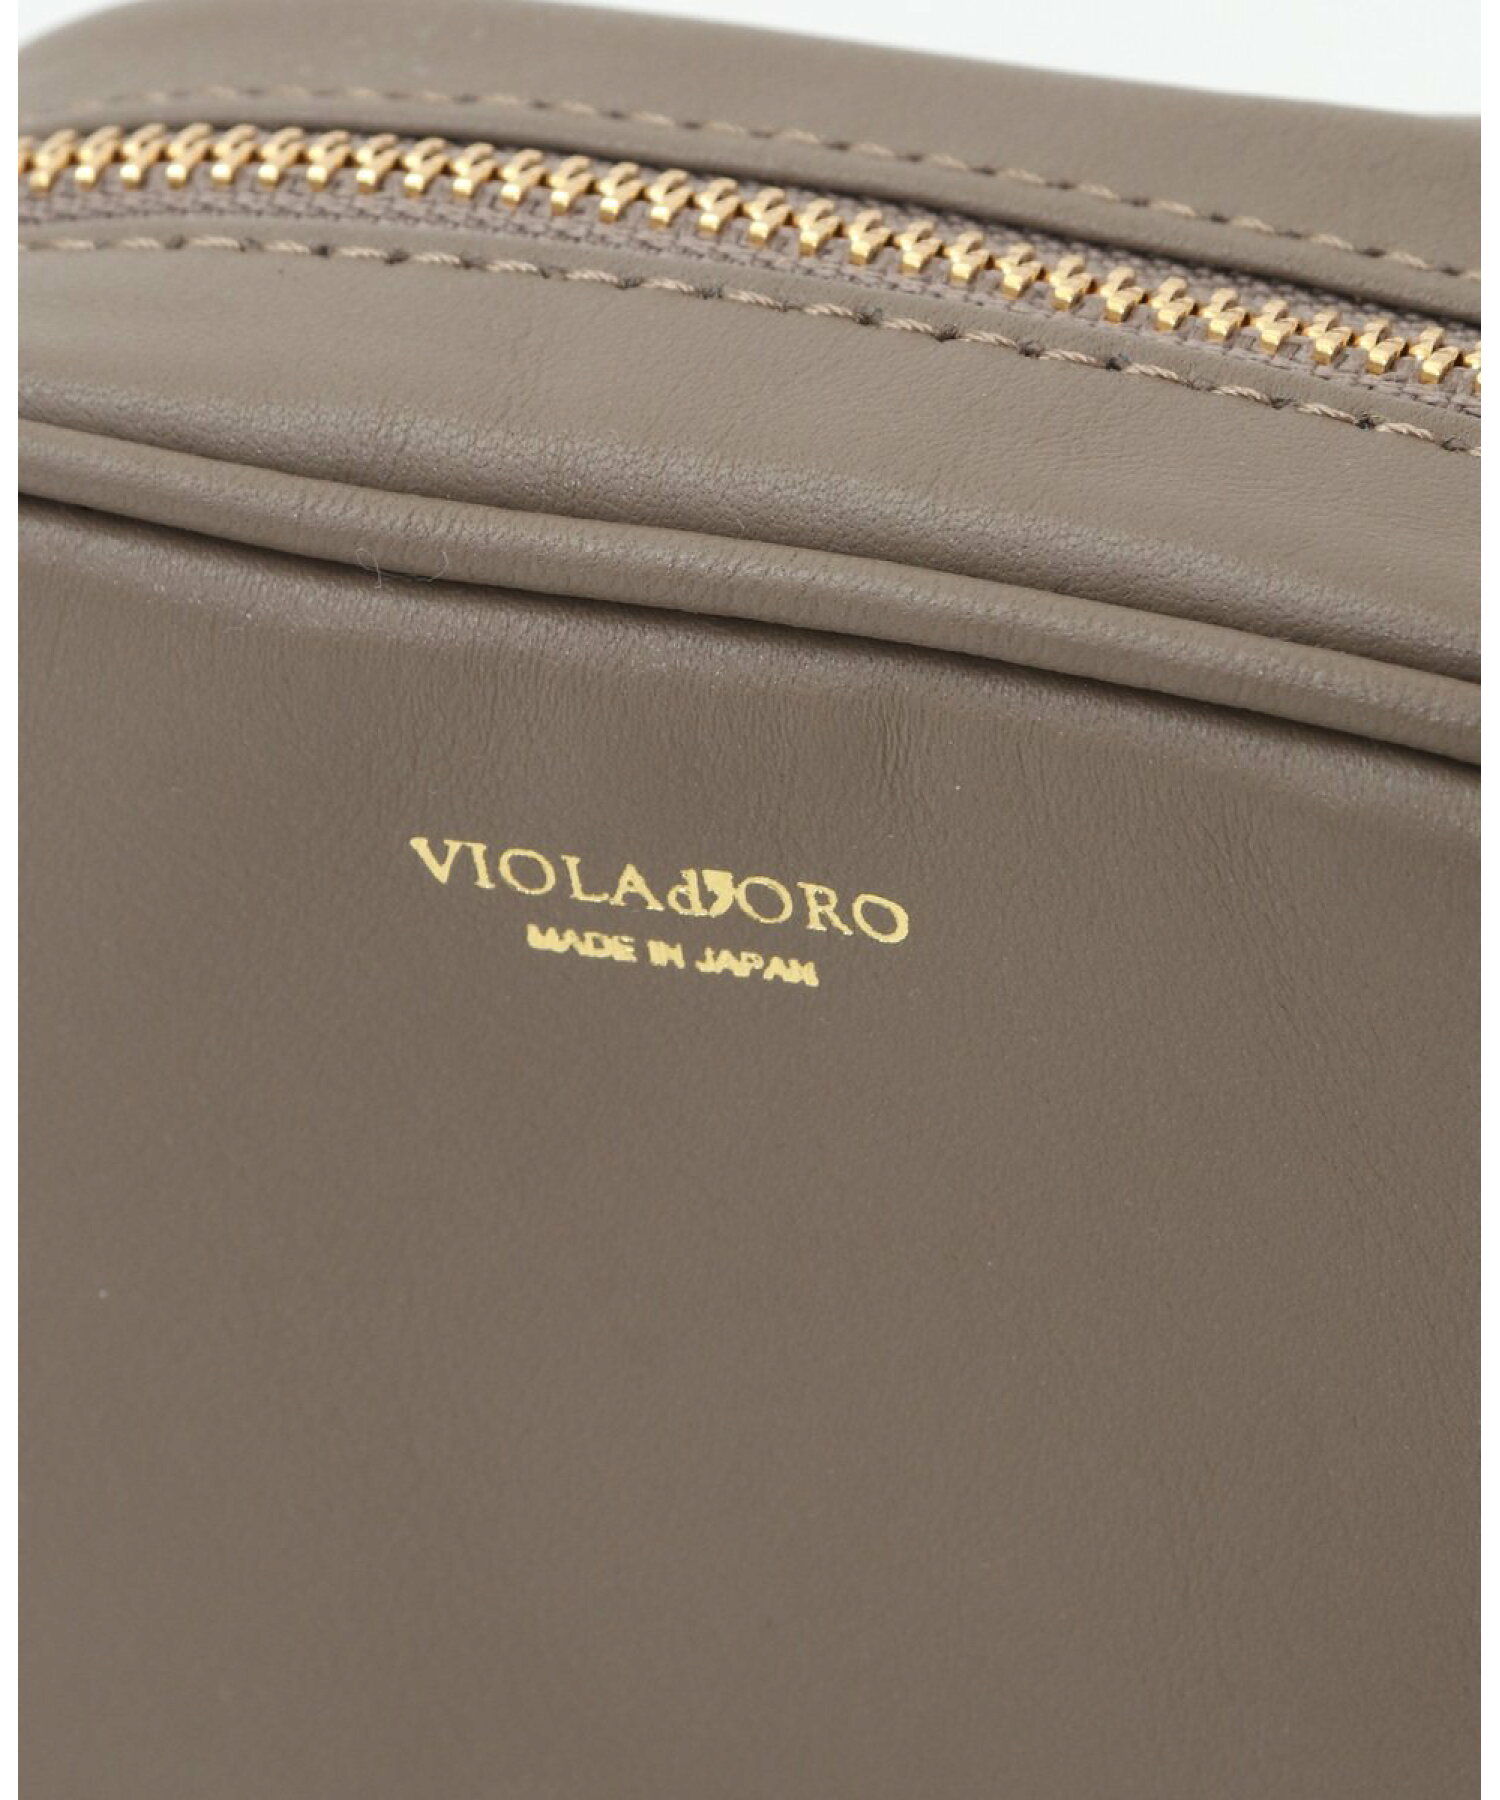 【VIOLAd'ORO】ショルダーバッグ/V-1498